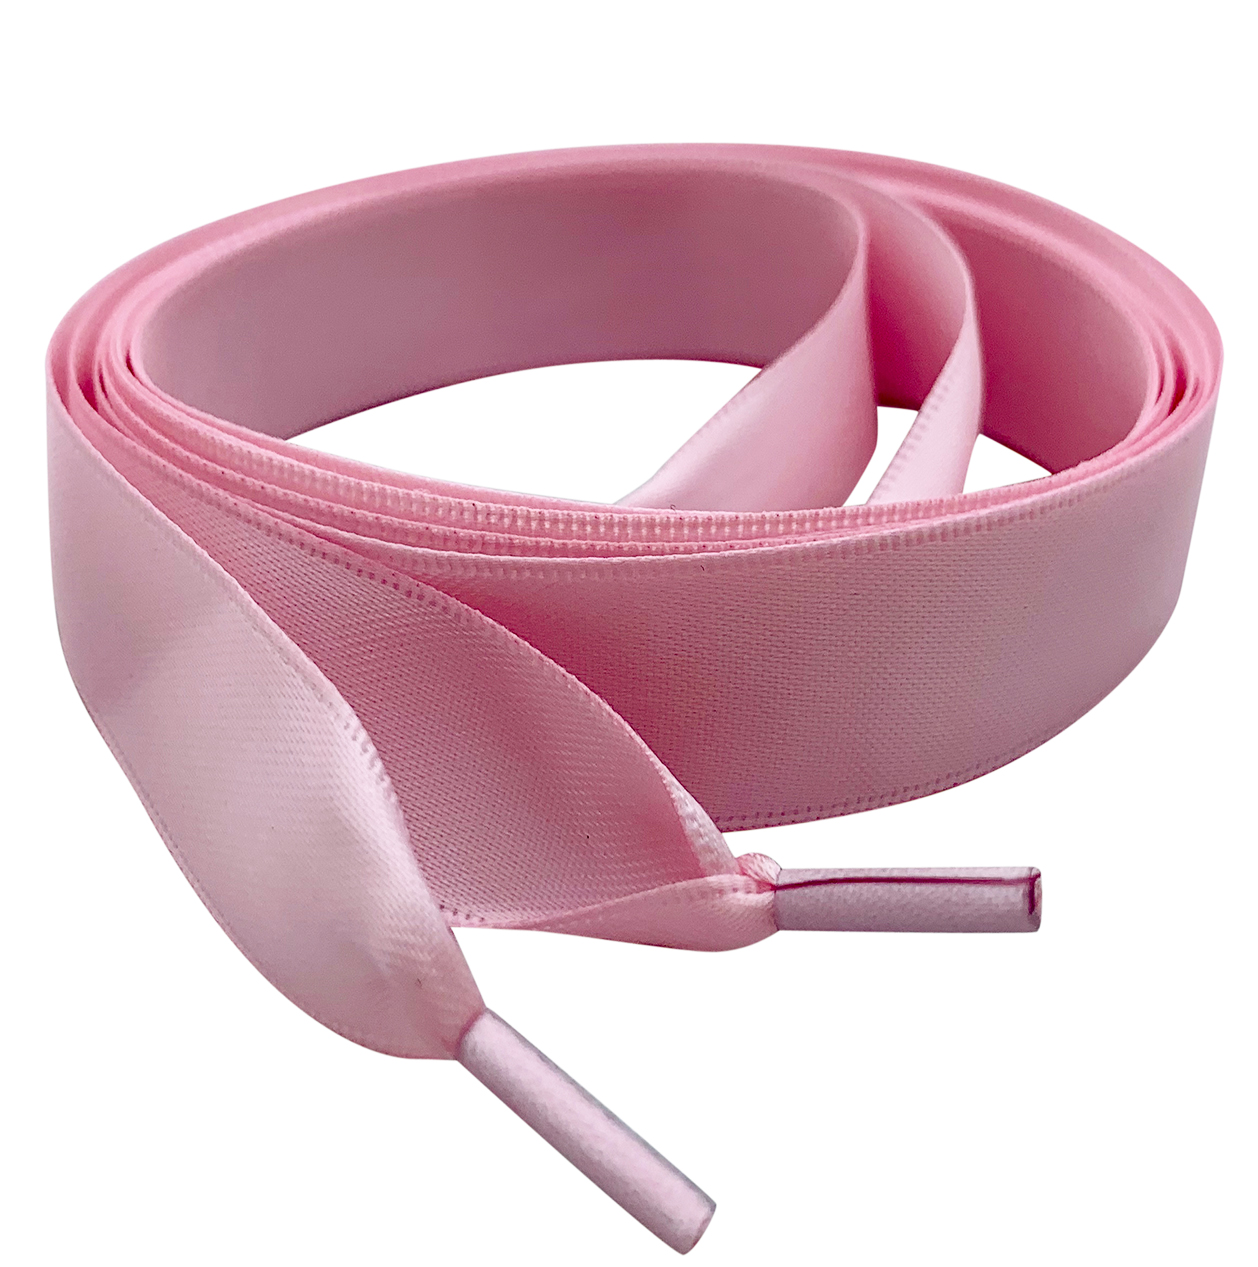 pale-baby-pink-satin-ribbon-shoelaces-1.jpg